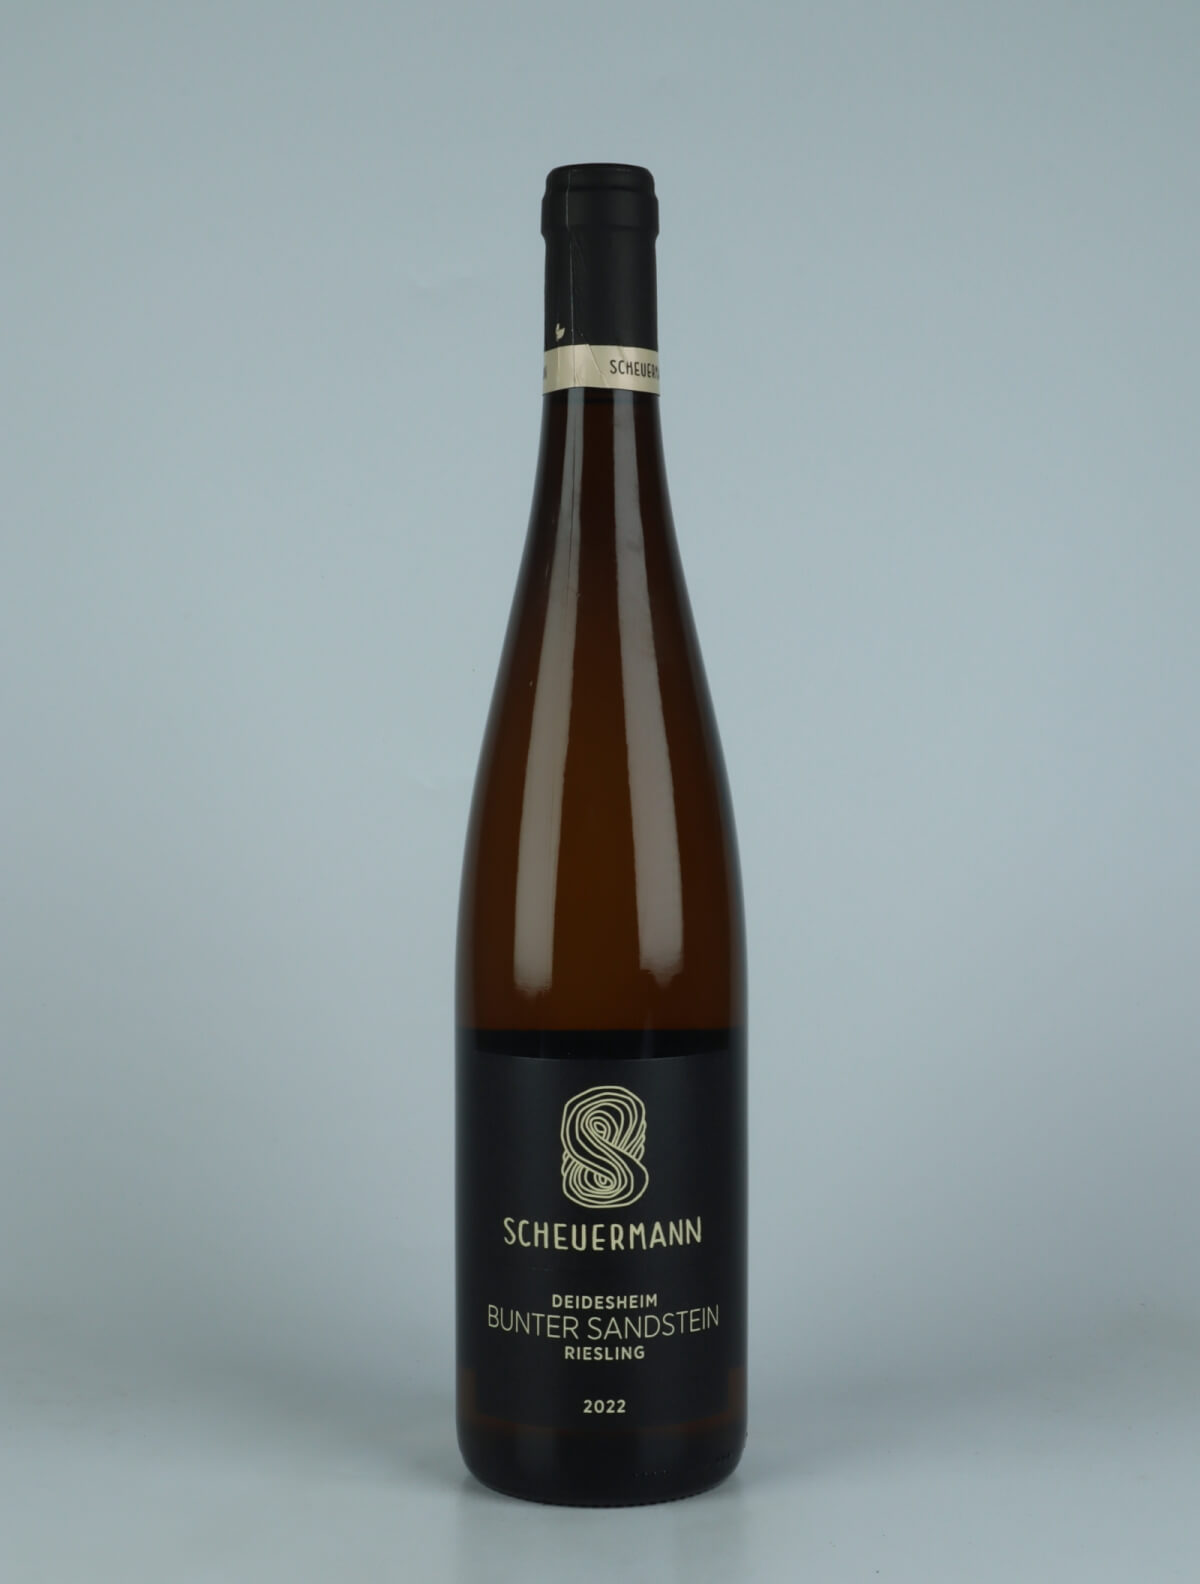 A bottle 2022 Riesling Bunter Sandstein White wine from Weingut Scheuermann, Pfalz in Germany